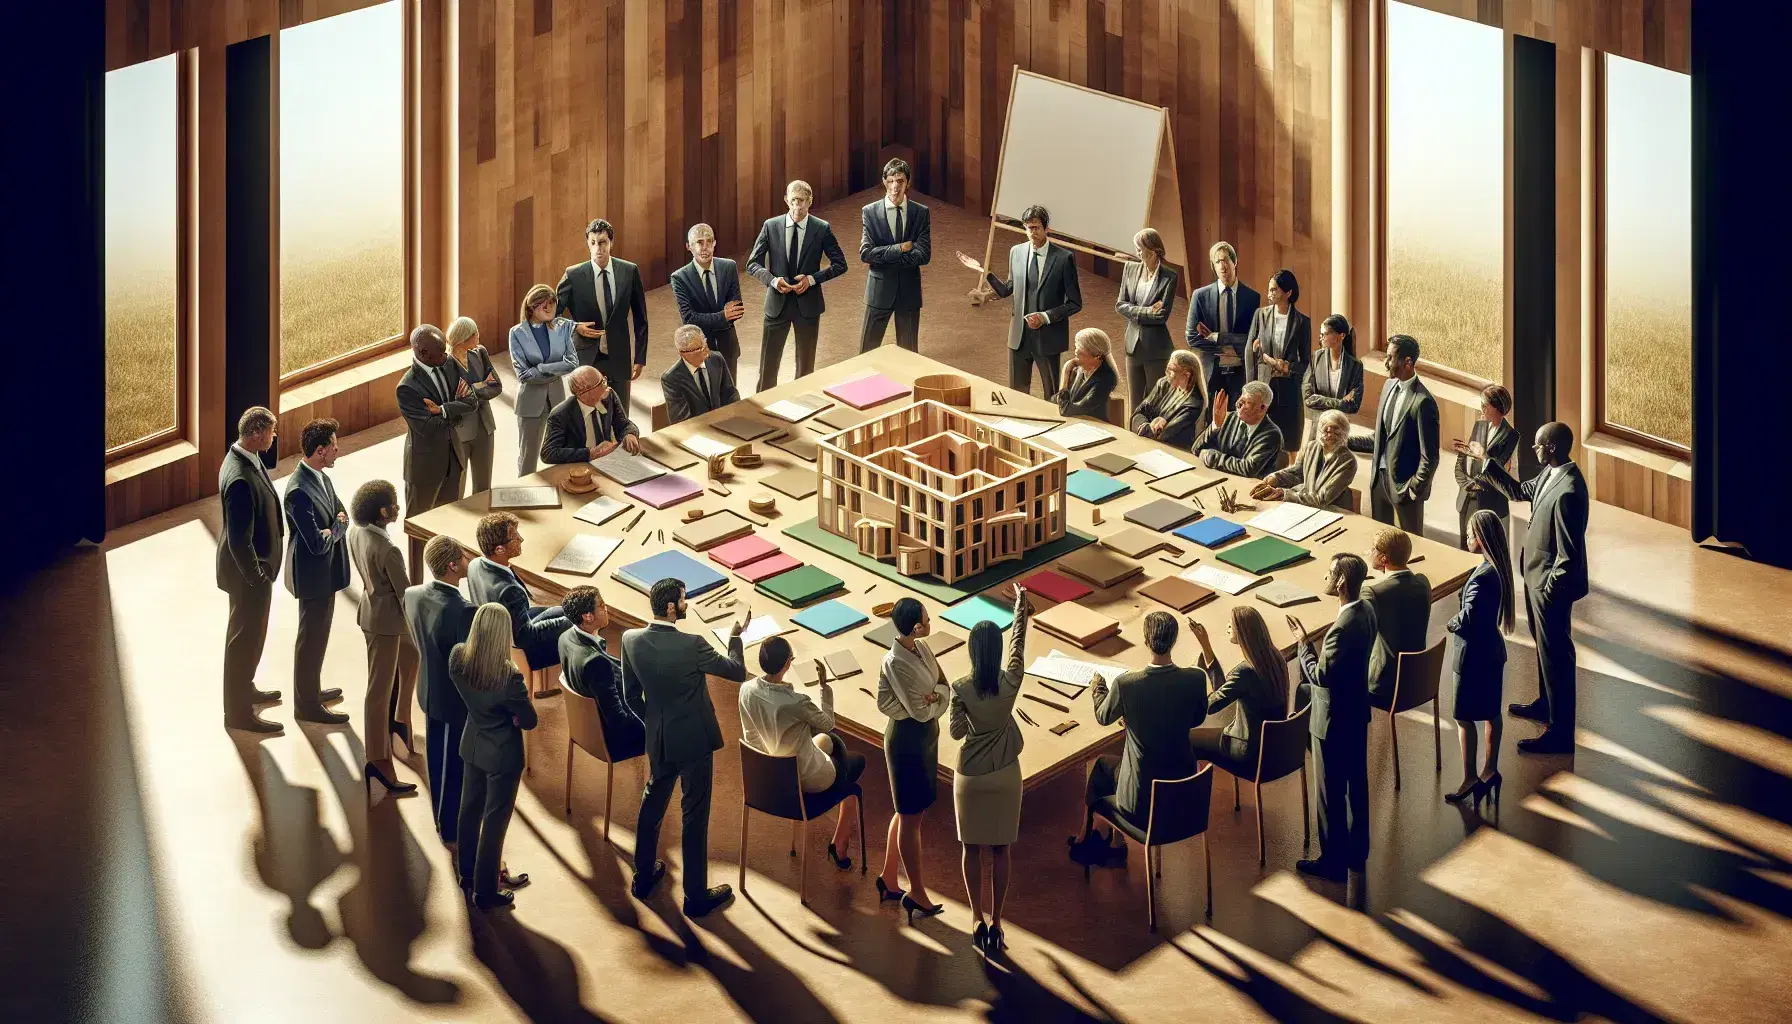 Grupo diverso de profesionales en reunión alrededor de una mesa con documentos y modelo de edificio, en una sala iluminada naturalmente.